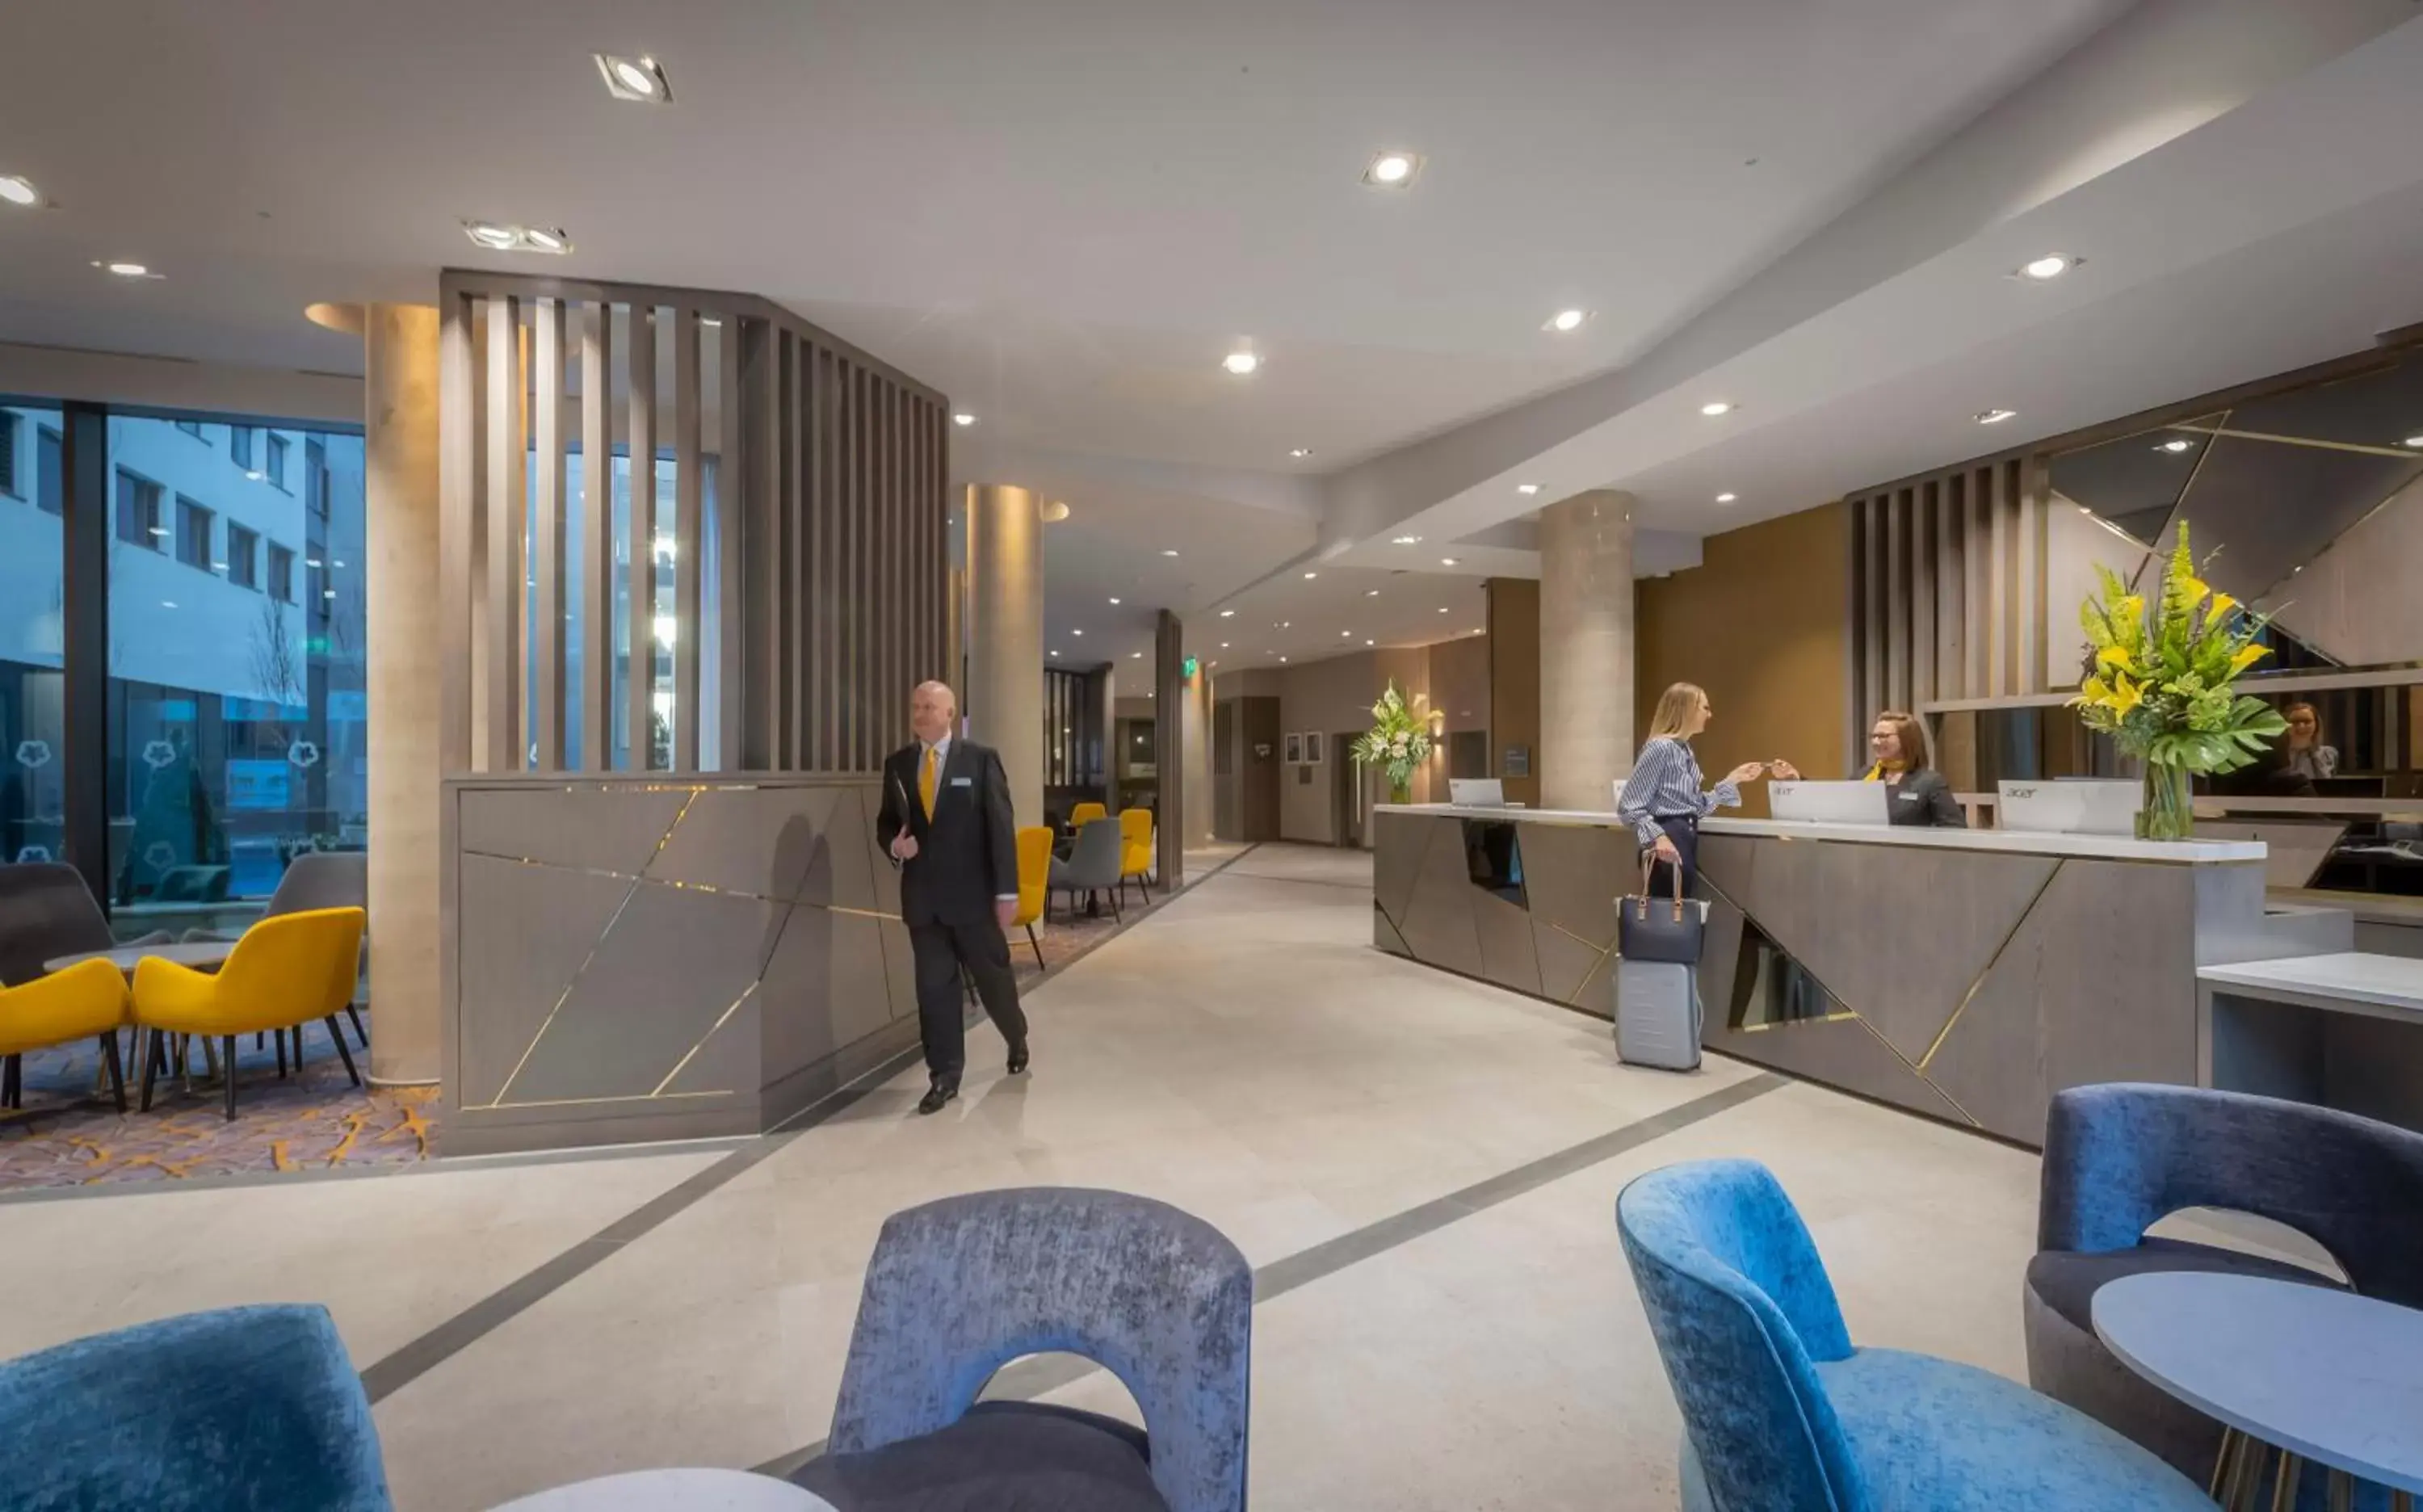 Lobby or reception, Lobby/Reception in Maldron Hotel Newcastle